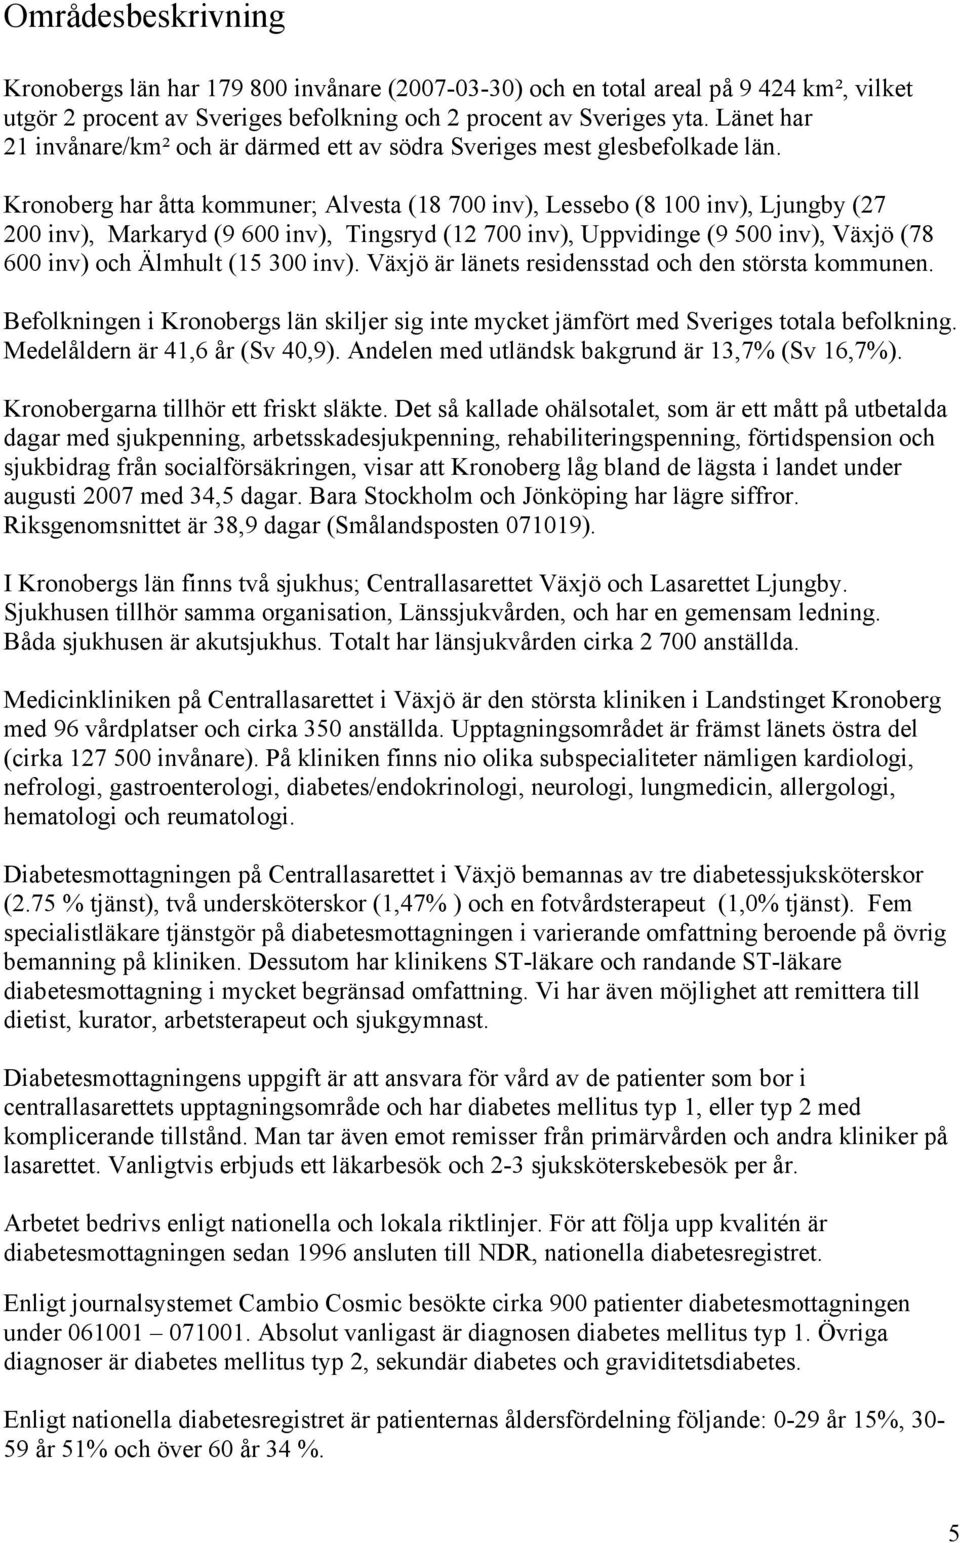 Kronoberg har åtta kommuner; Alvesta (18 700 inv), Lessebo (8 100 inv), Ljungby (27 200 inv), Markaryd (9 600 inv), Tingsryd (12 700 inv), Uppvidinge (9 500 inv), Växjö (78 600 inv) och Älmhult (15